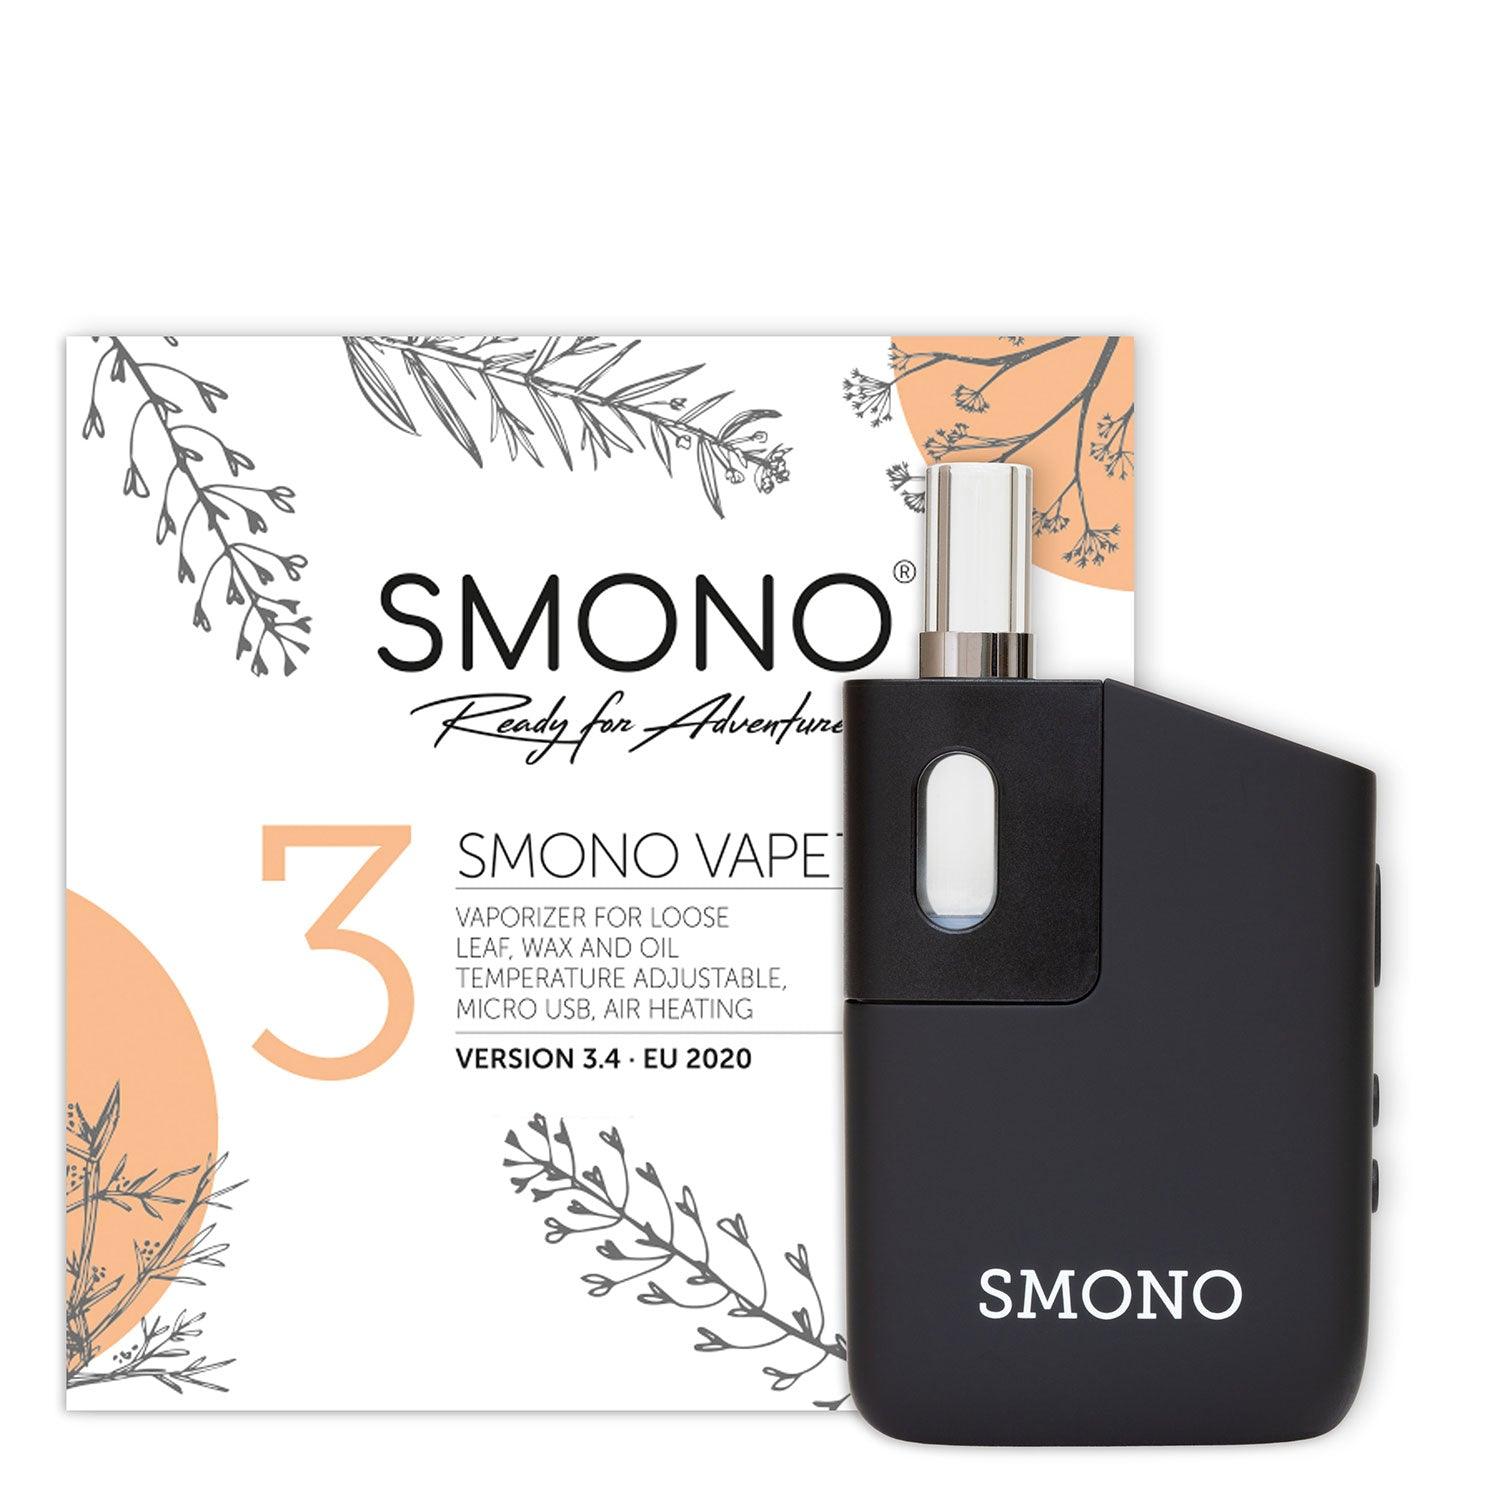 Vaporisateur Smono N°3 - vaporizer portable à chauffe par